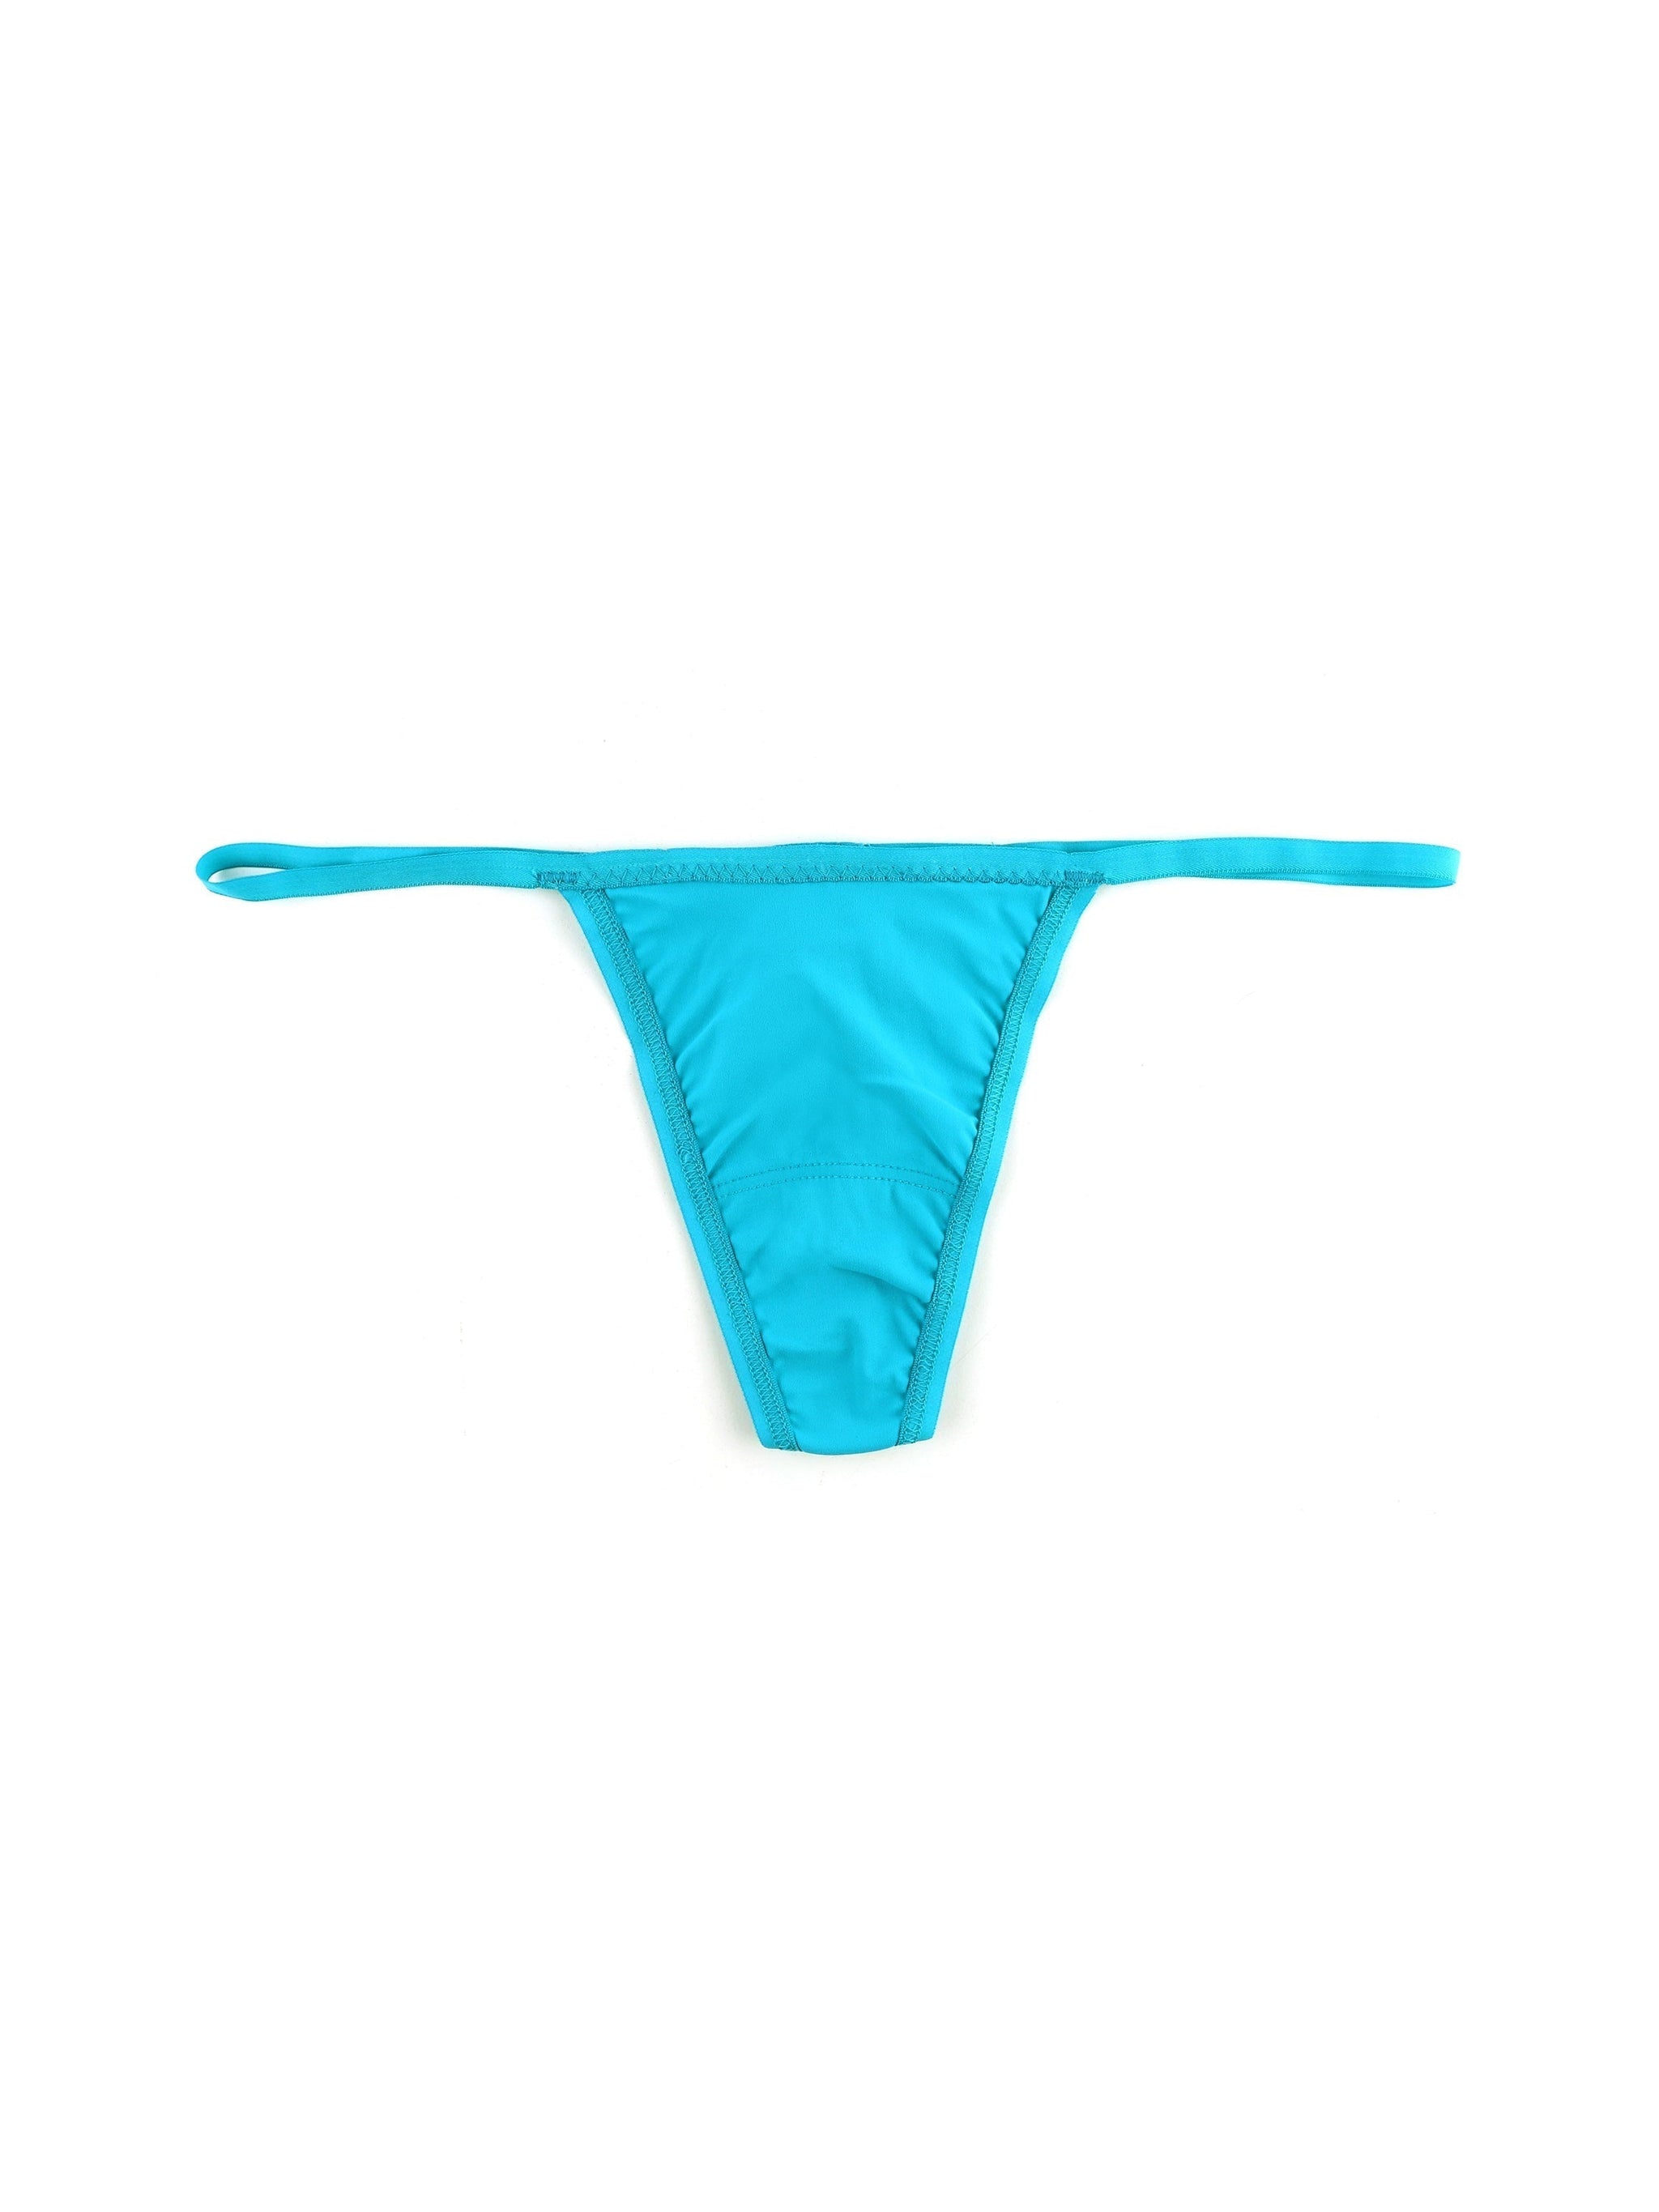 Buy Decoy women's microfiber thong at